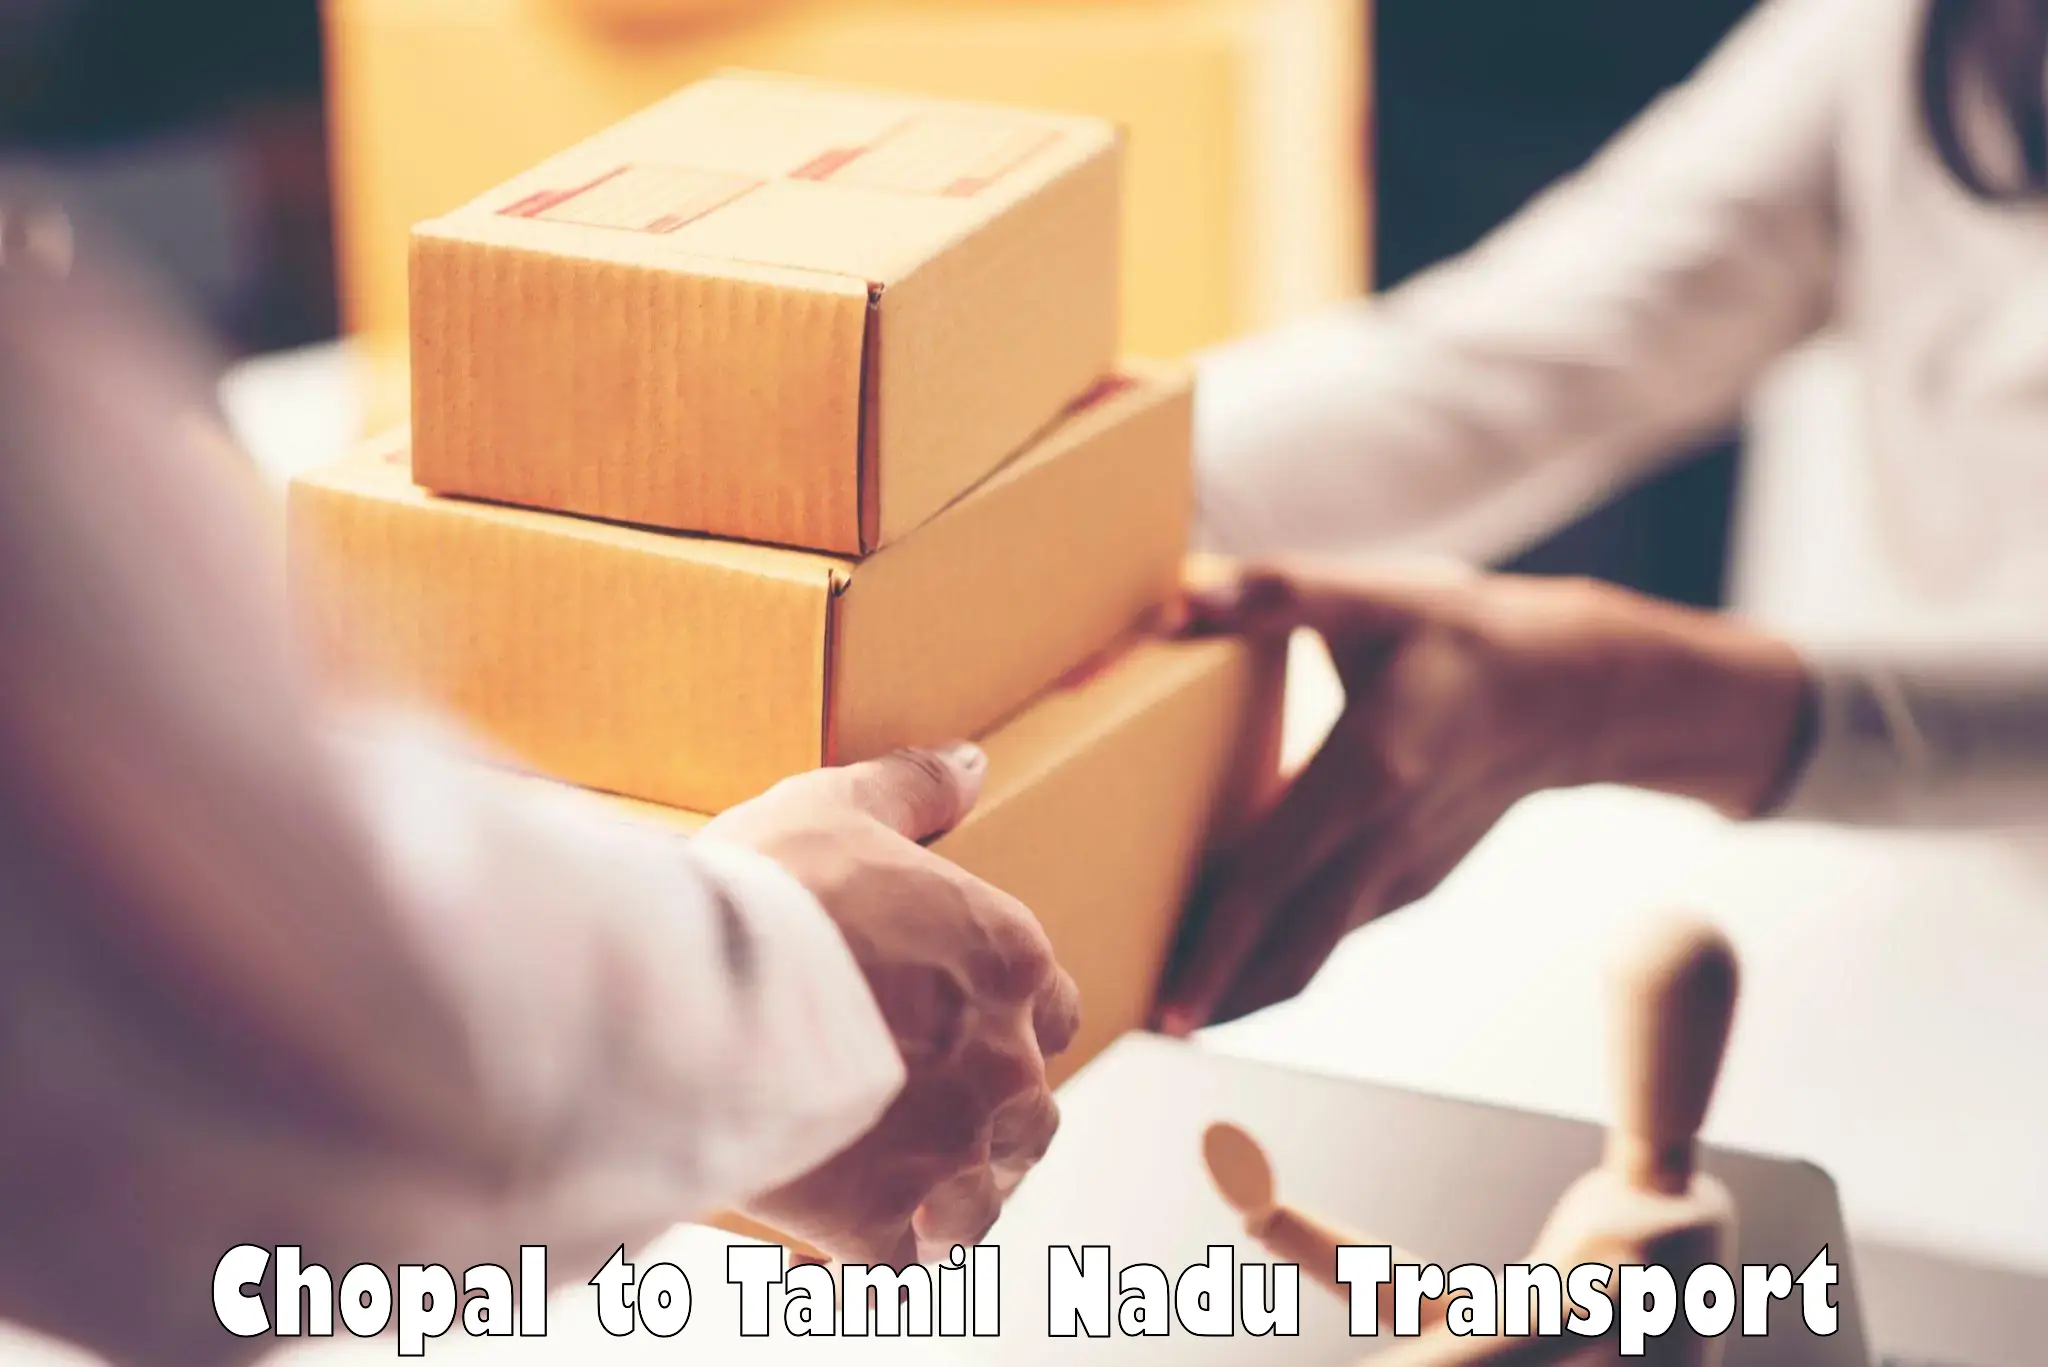 Furniture transport service Chopal to Tamil Nadu